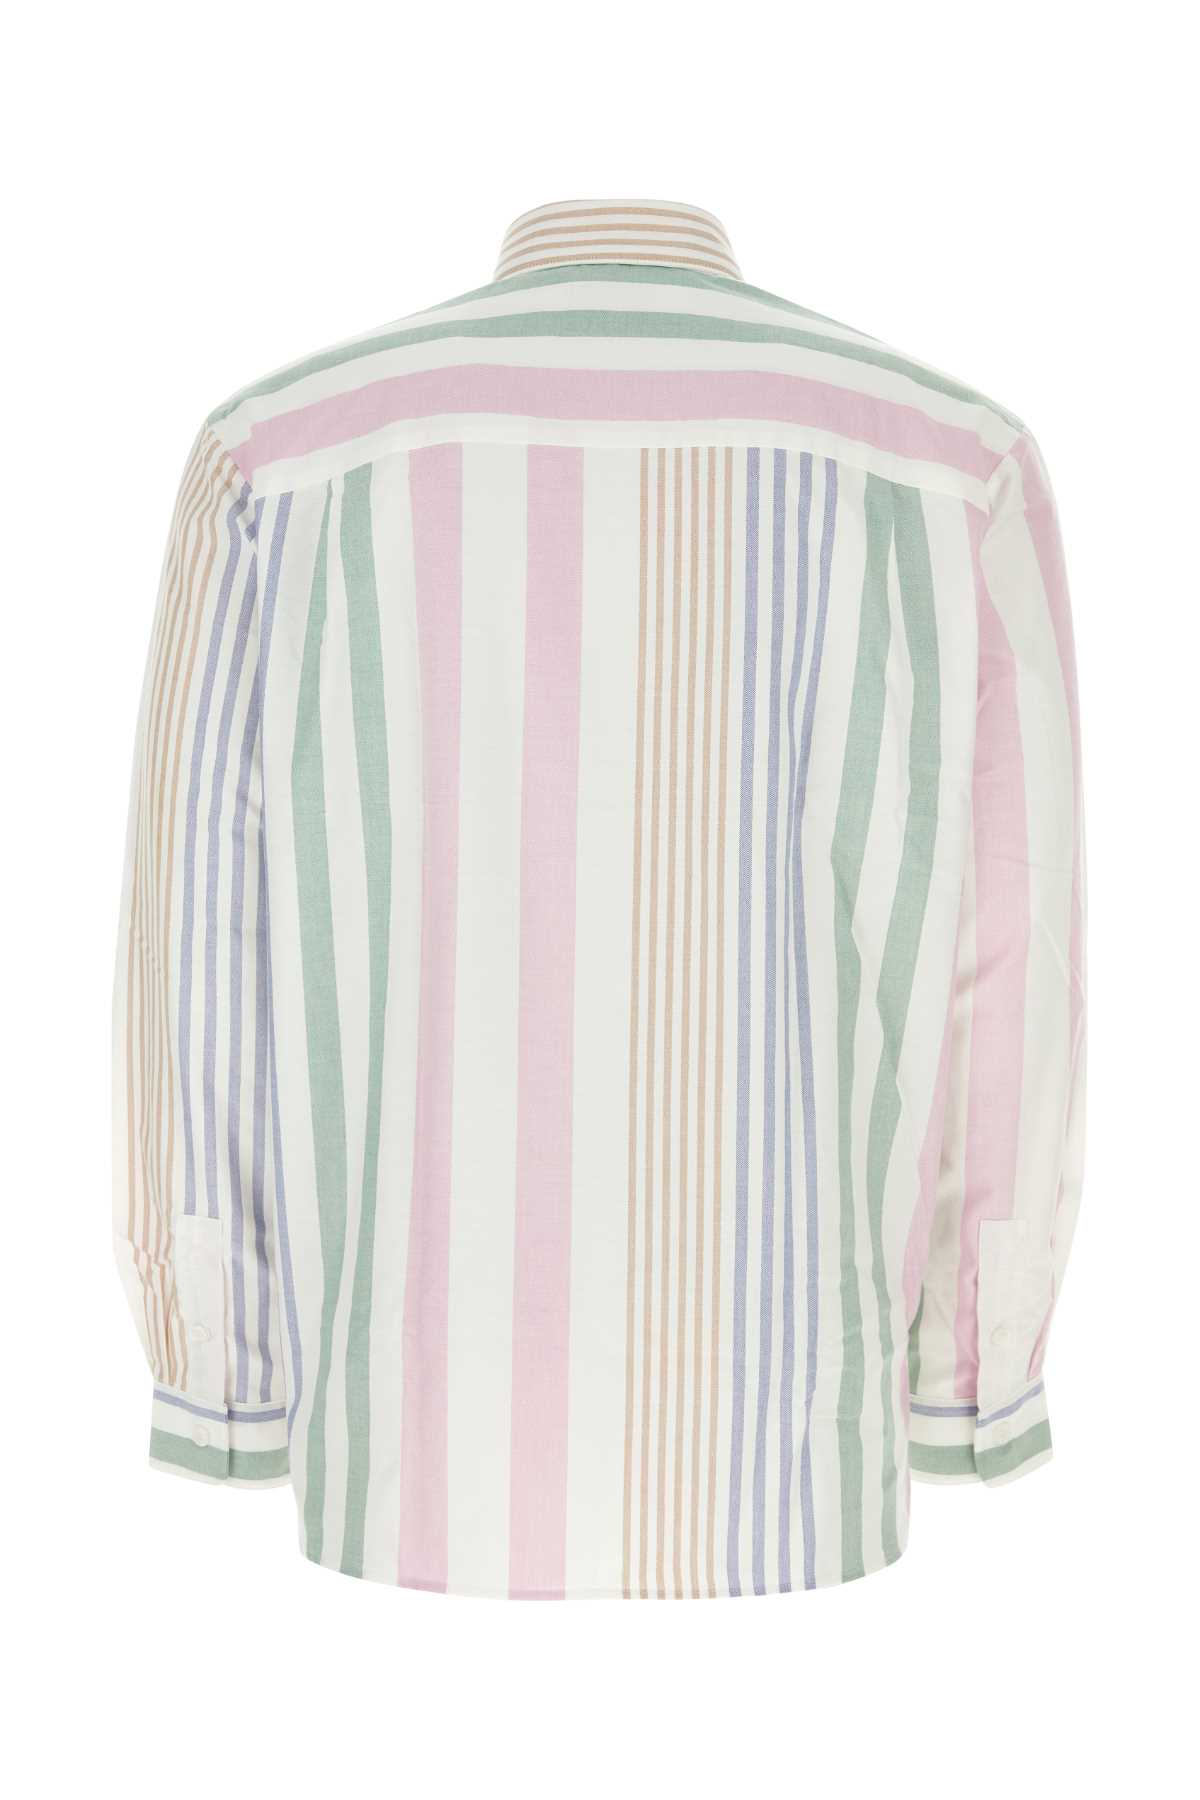 Apc Embroidered Oxford Mateo Shirt In Multicolore